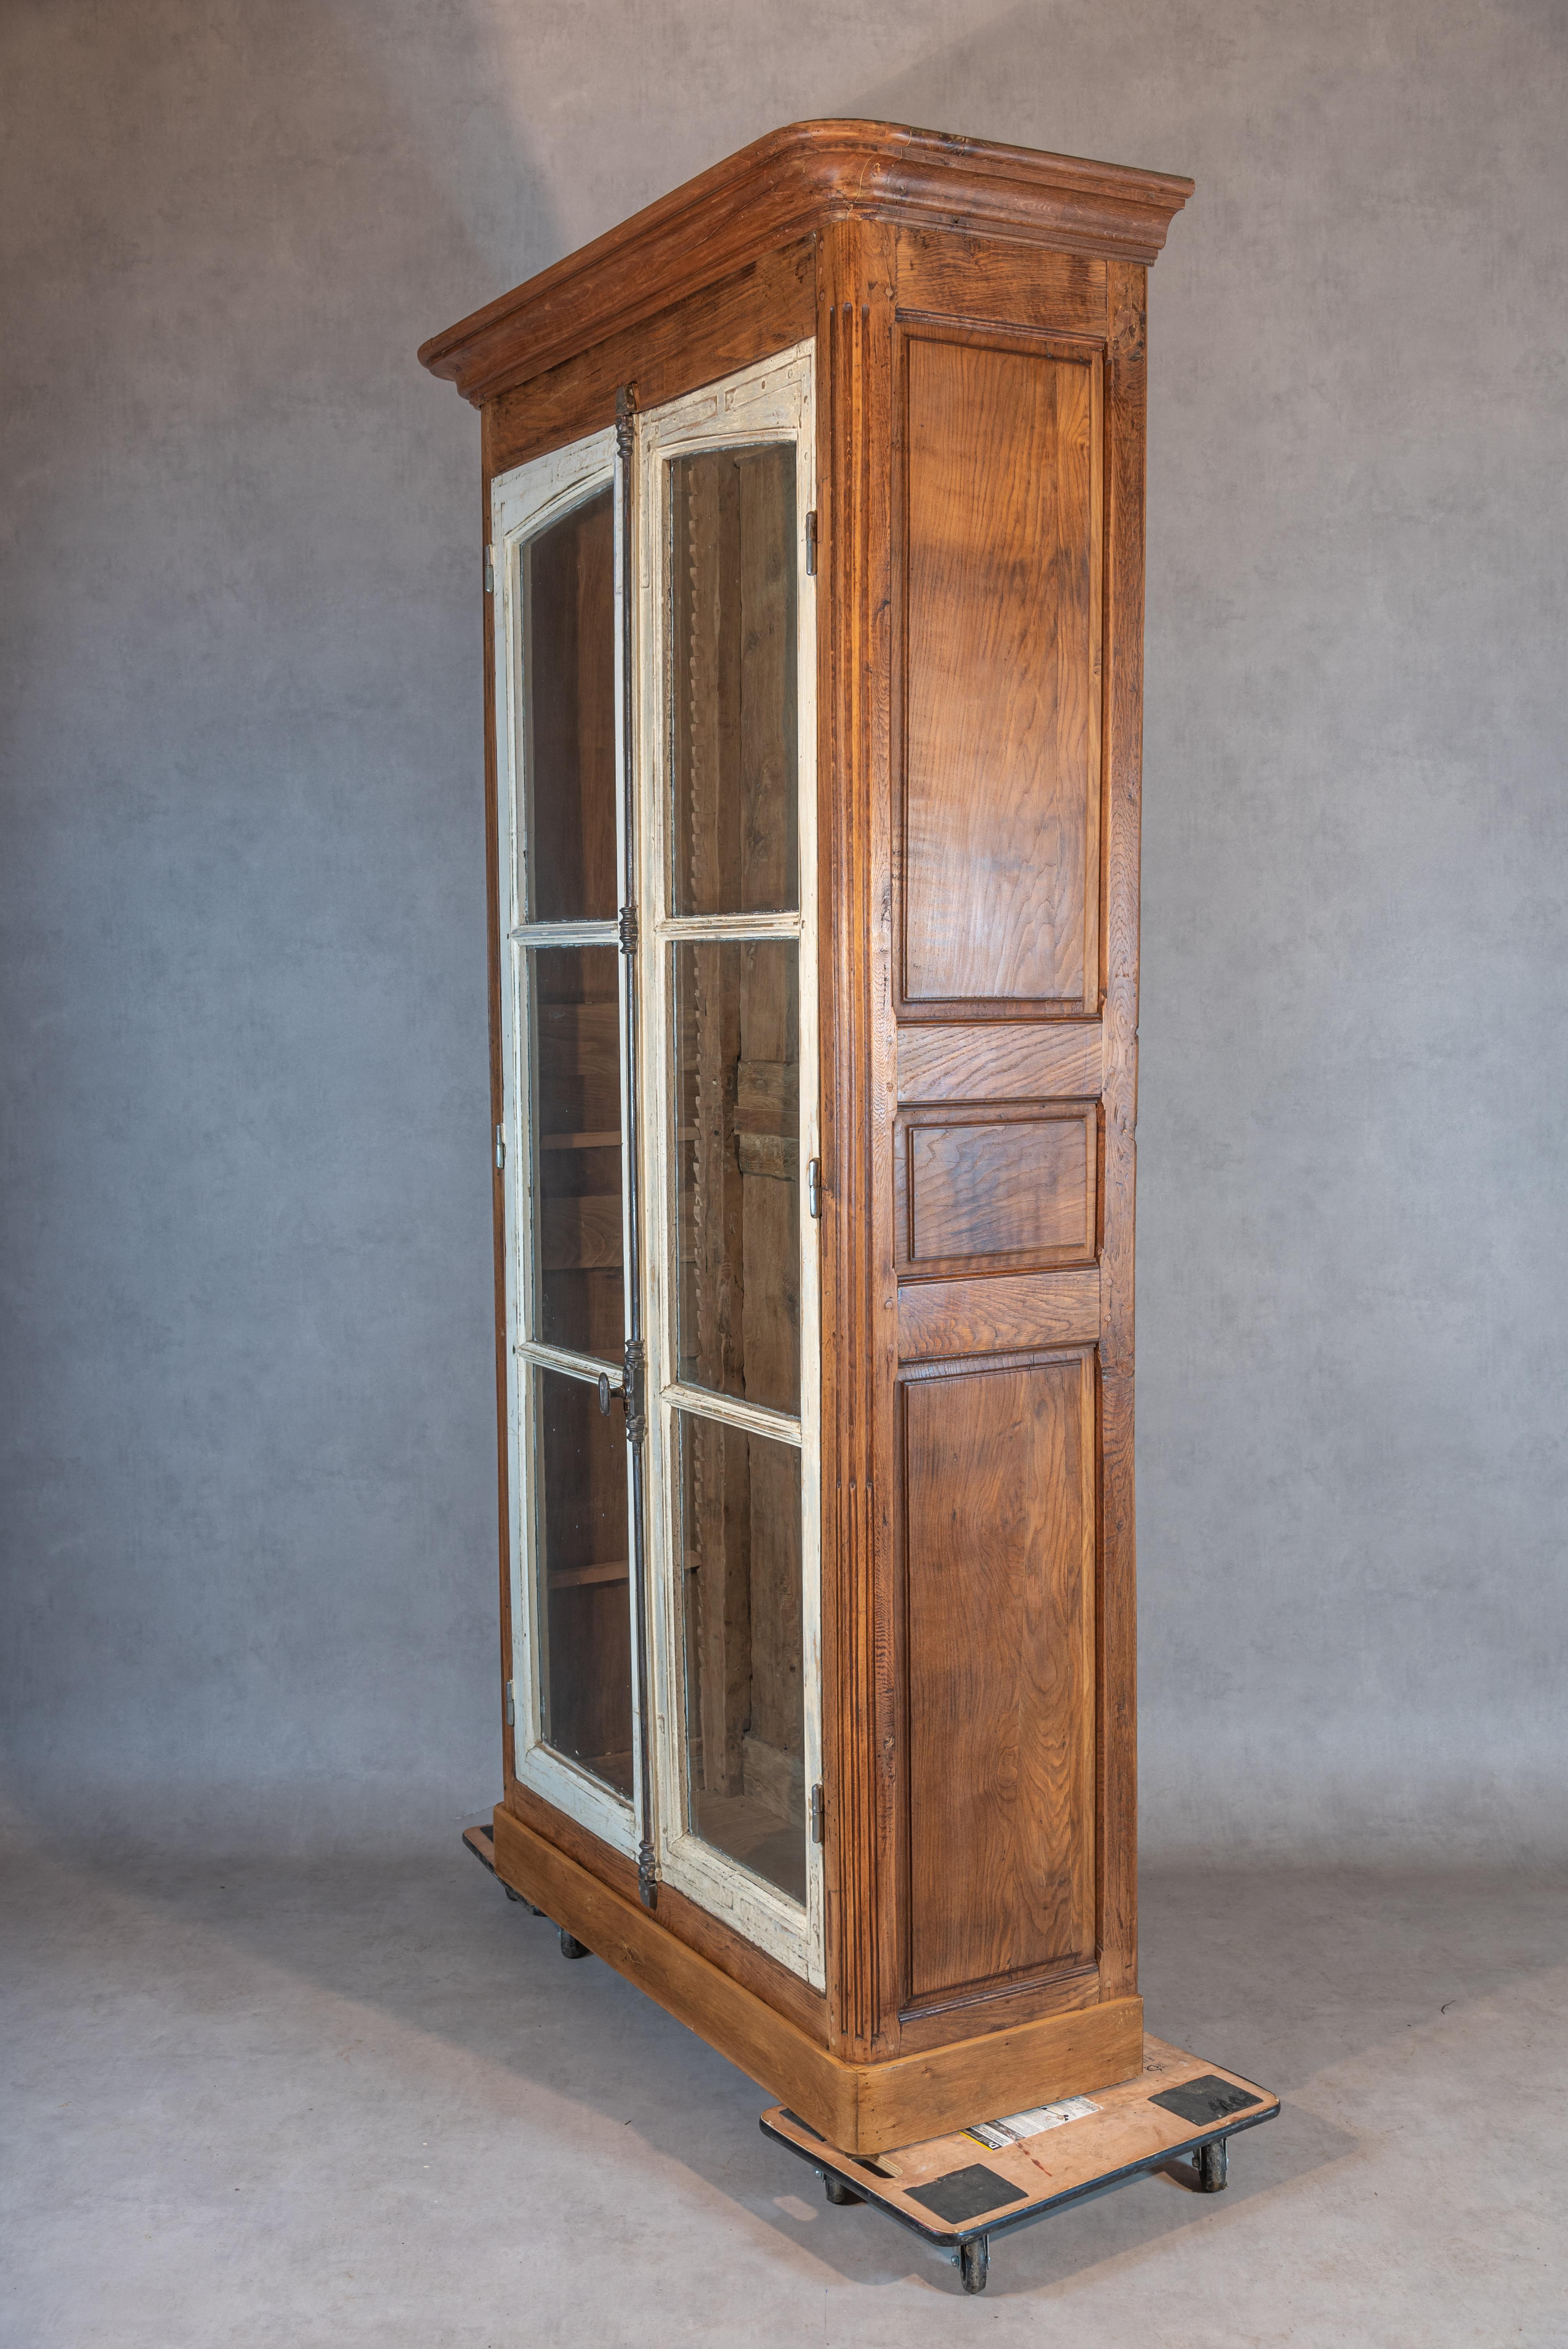 
Voici une armoire remarquable, qui s'inscrit fièrement dans notre gamme d'antiquités repensées. Nous avons soigneusement conçu cette pièce en combinant d'authentiques fenêtres du XIXe siècle, provenant à l'origine d'une 